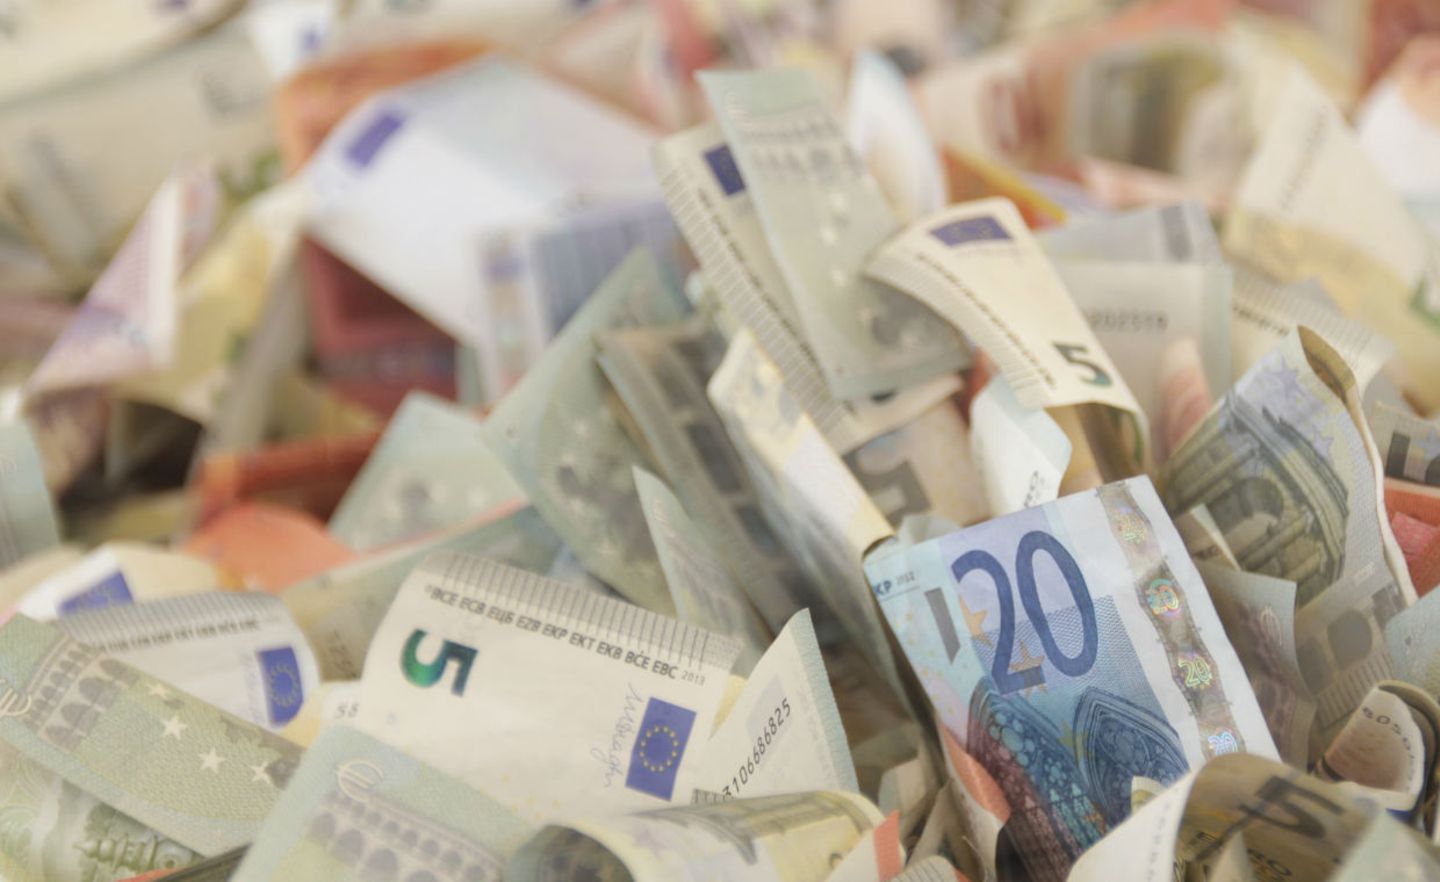 Symbolbild: Bargeld Euro-Scheine